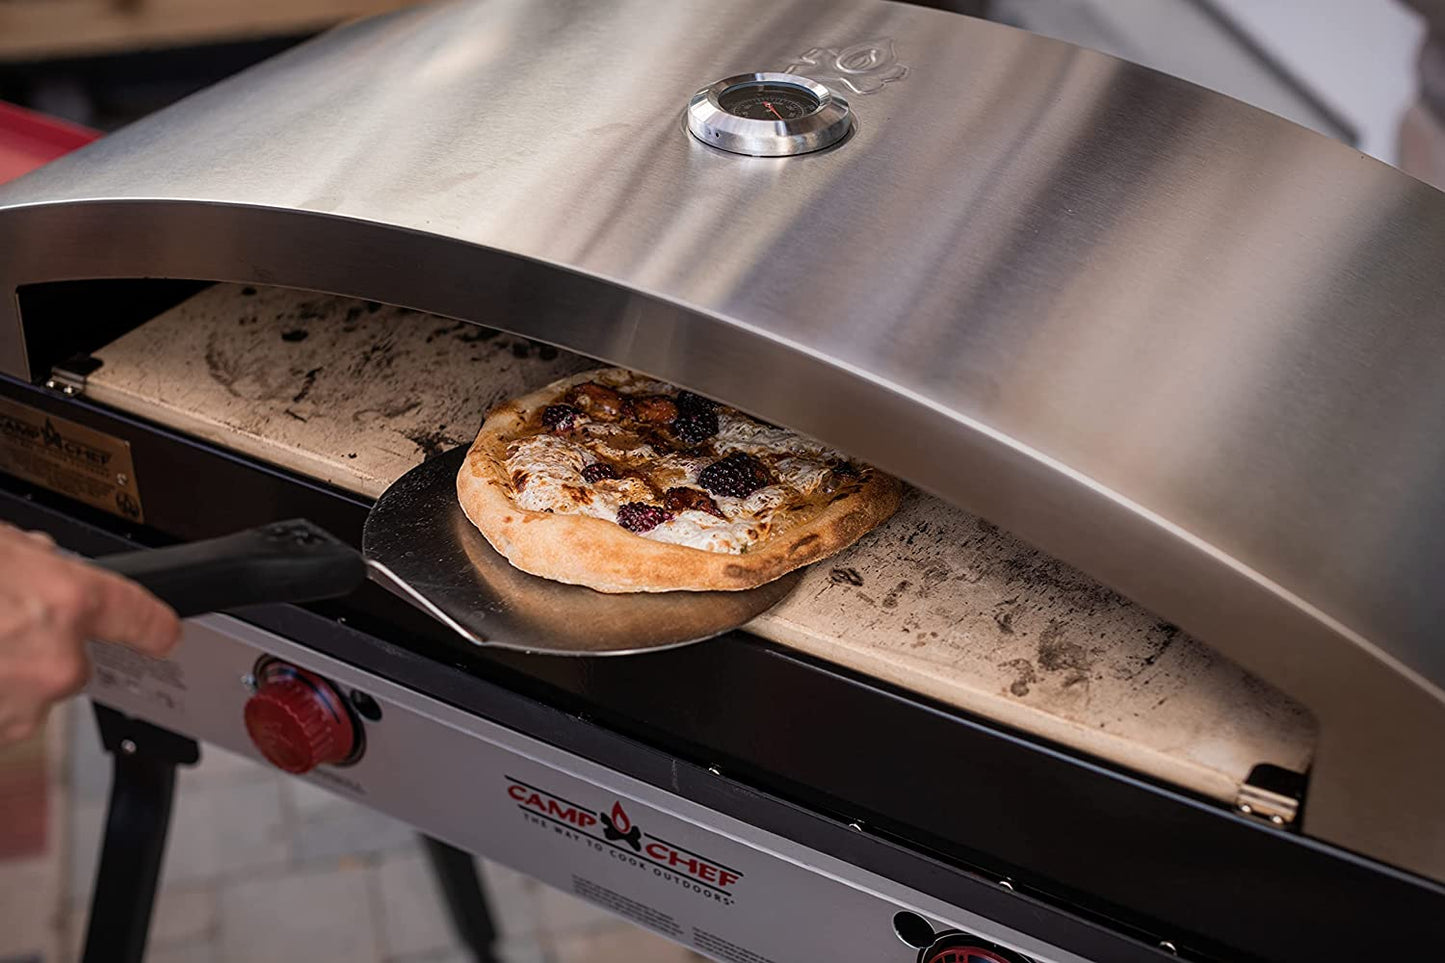 14" x 32" Italia Artisan Pizza Oven Accessory - PZ60